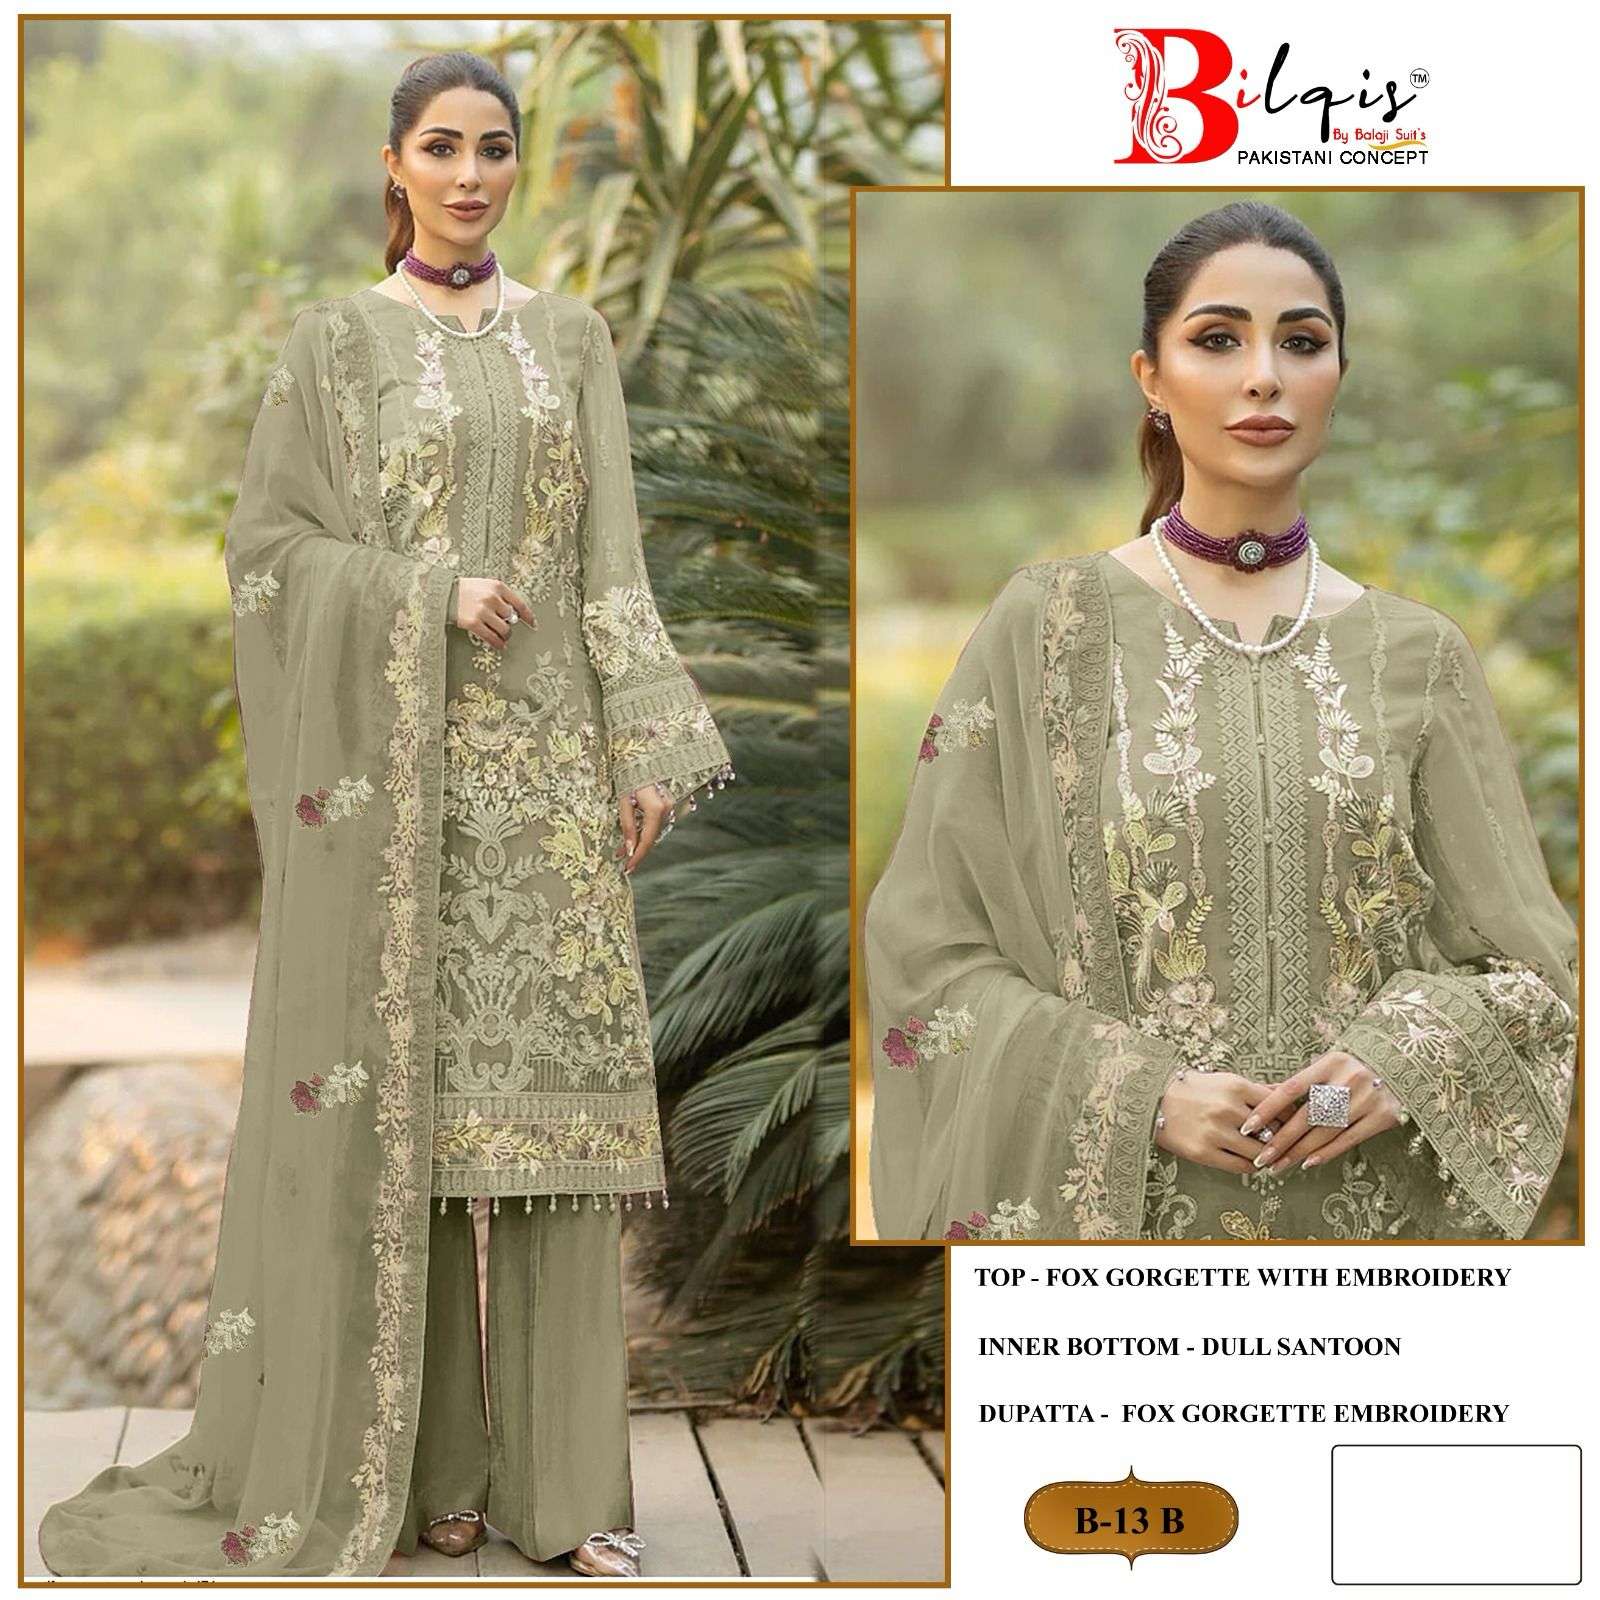 Bilqis B 13 Faux Georgette Pakistani Suits Wholesale catalog